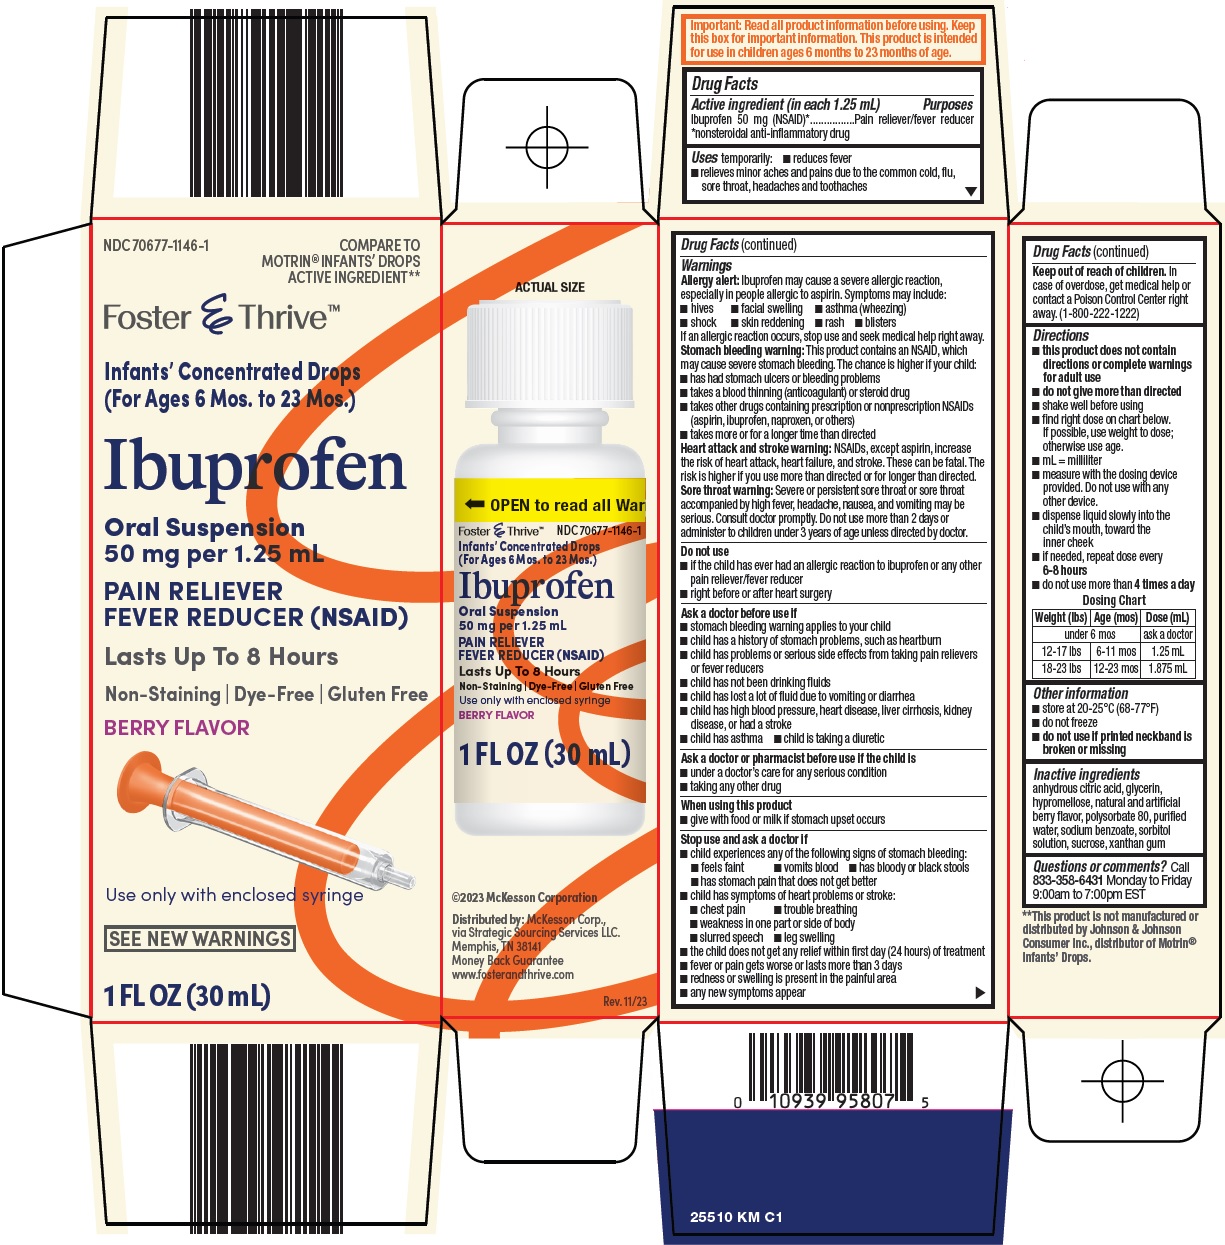 Ibuprofen Oral Suspension Carton